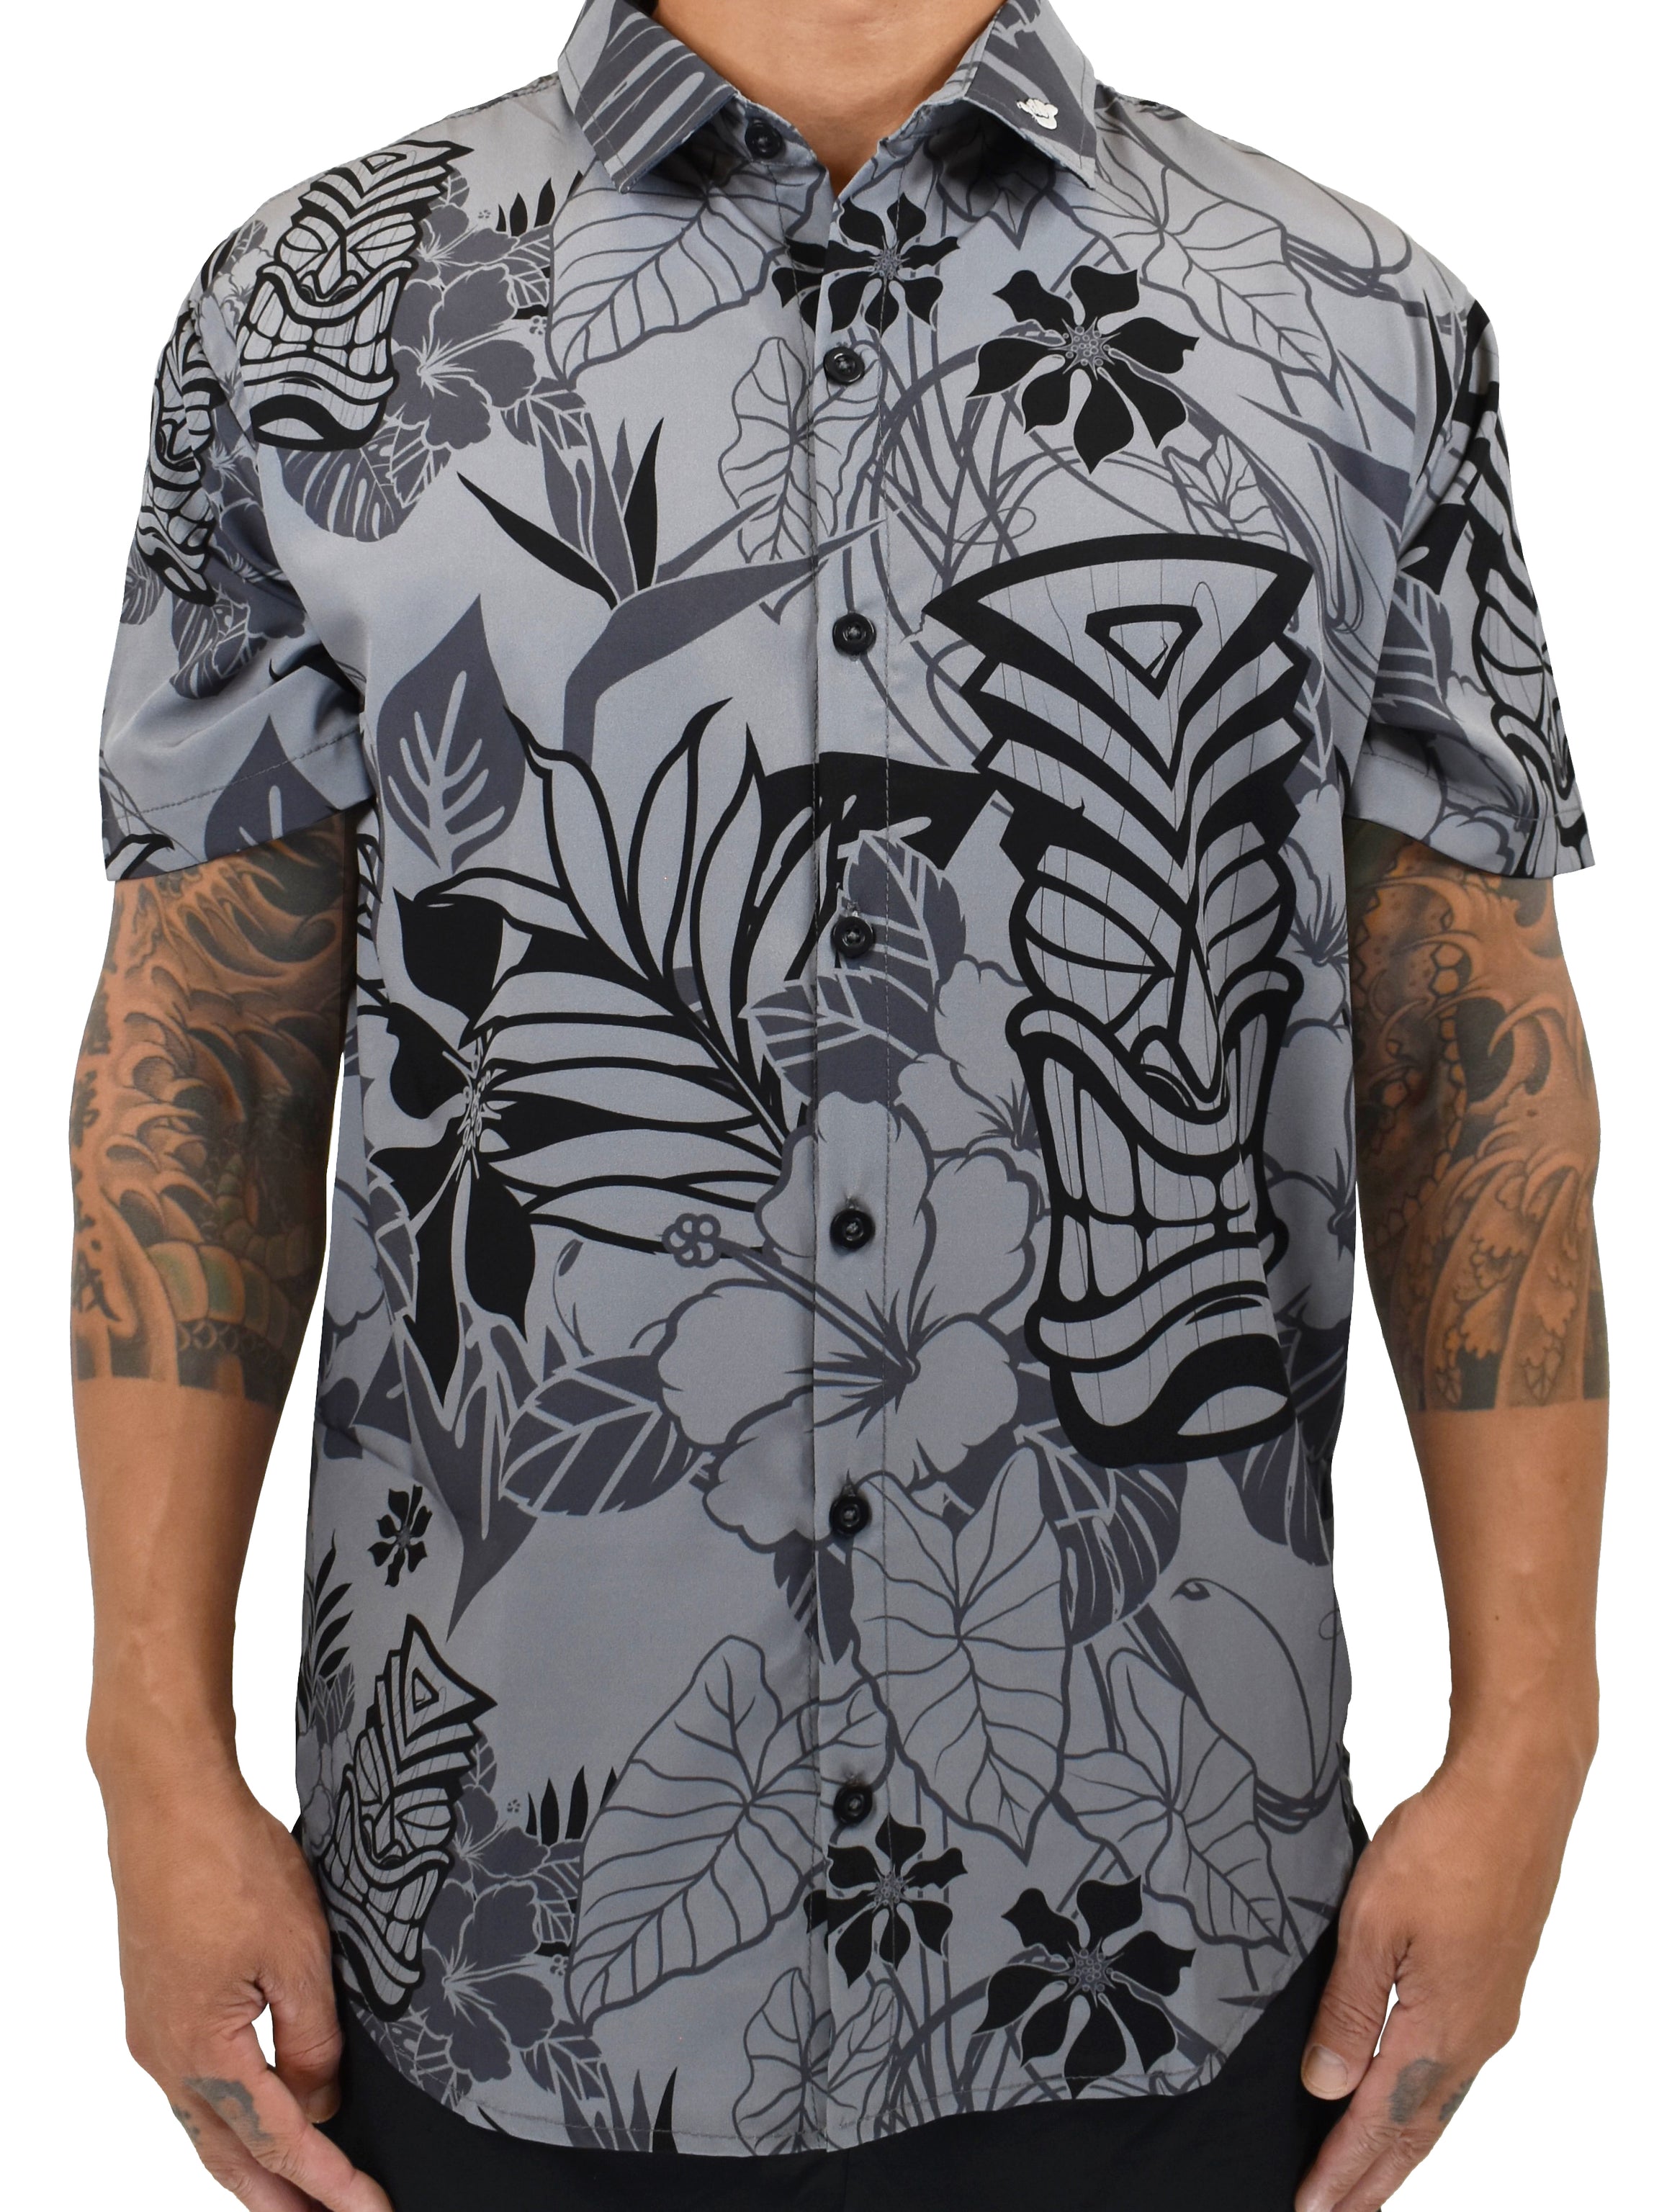 'Mahalo Tiki' Aloha (Hawaiian) Shirt